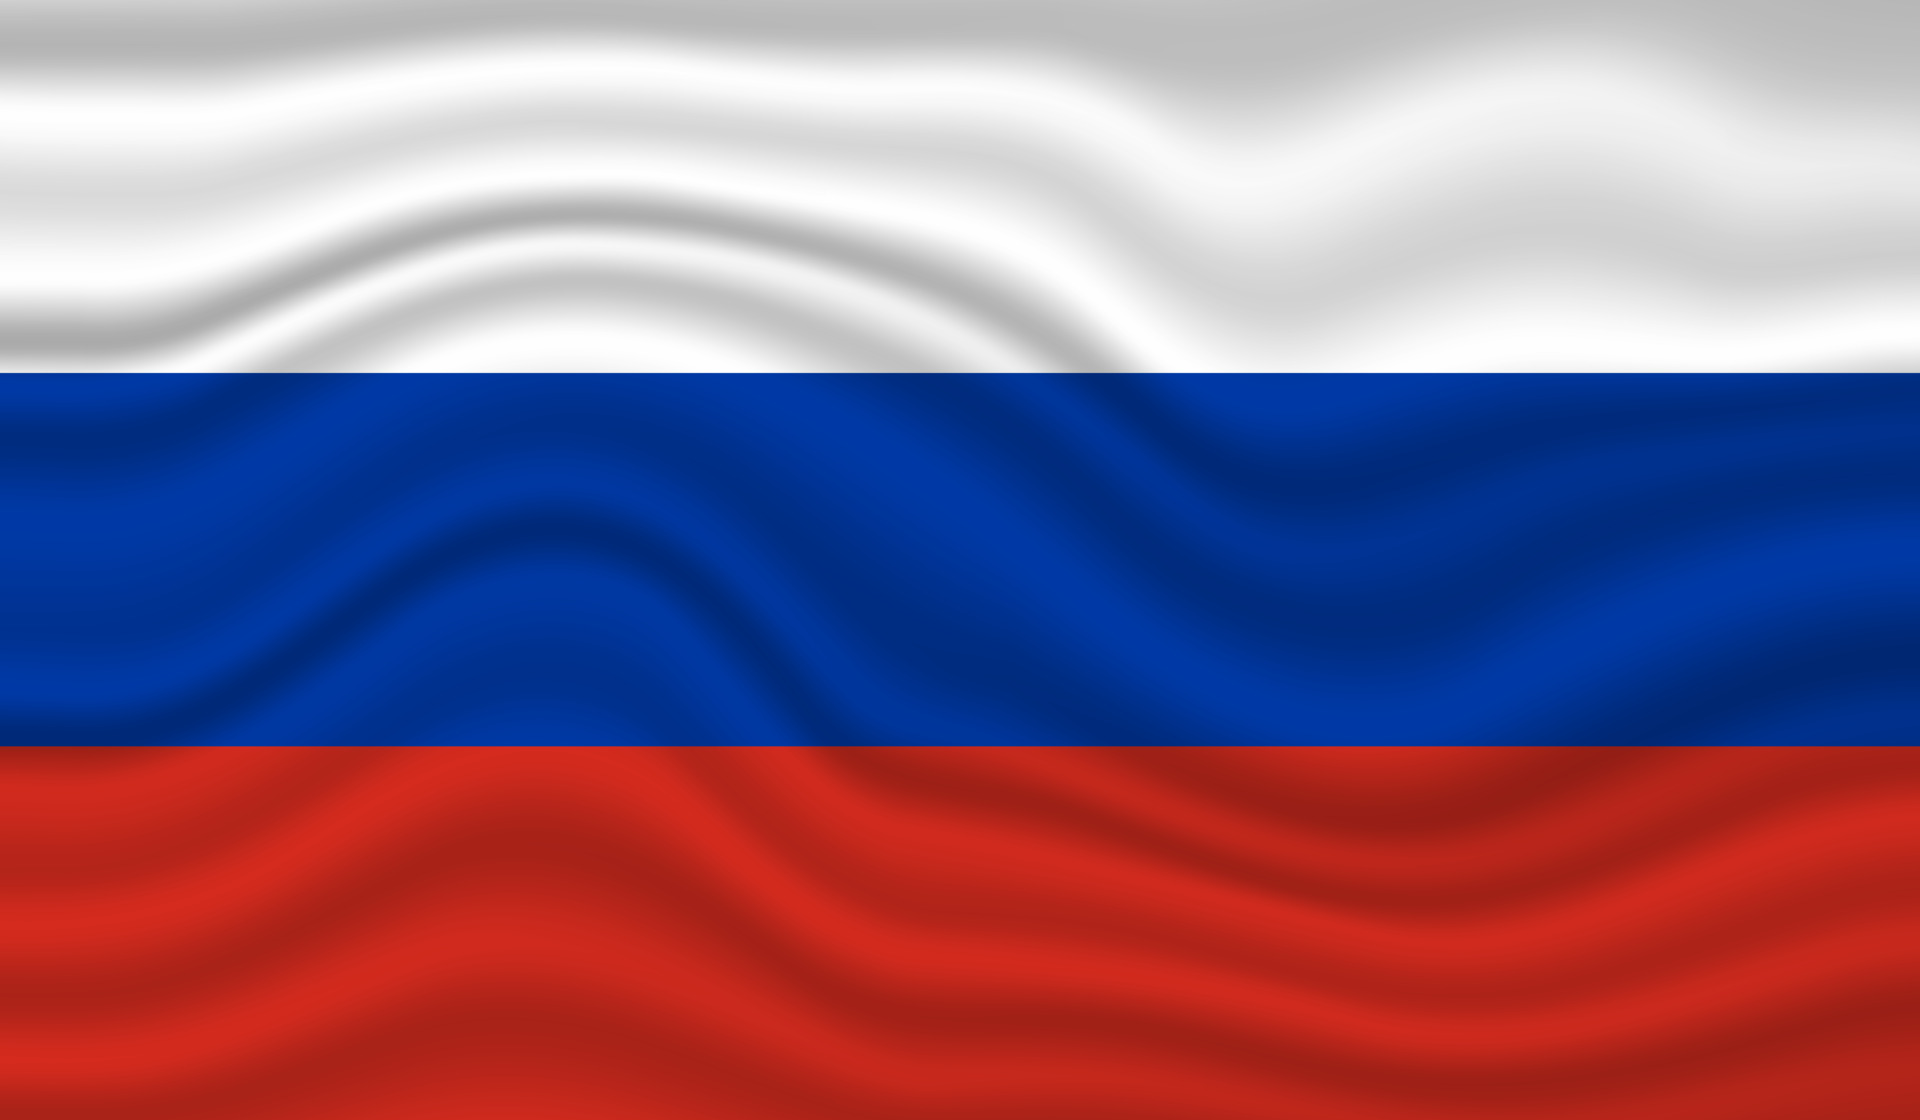 Flaga Rosji, która symbolizuje populację Rosji, o której mowa w artykule